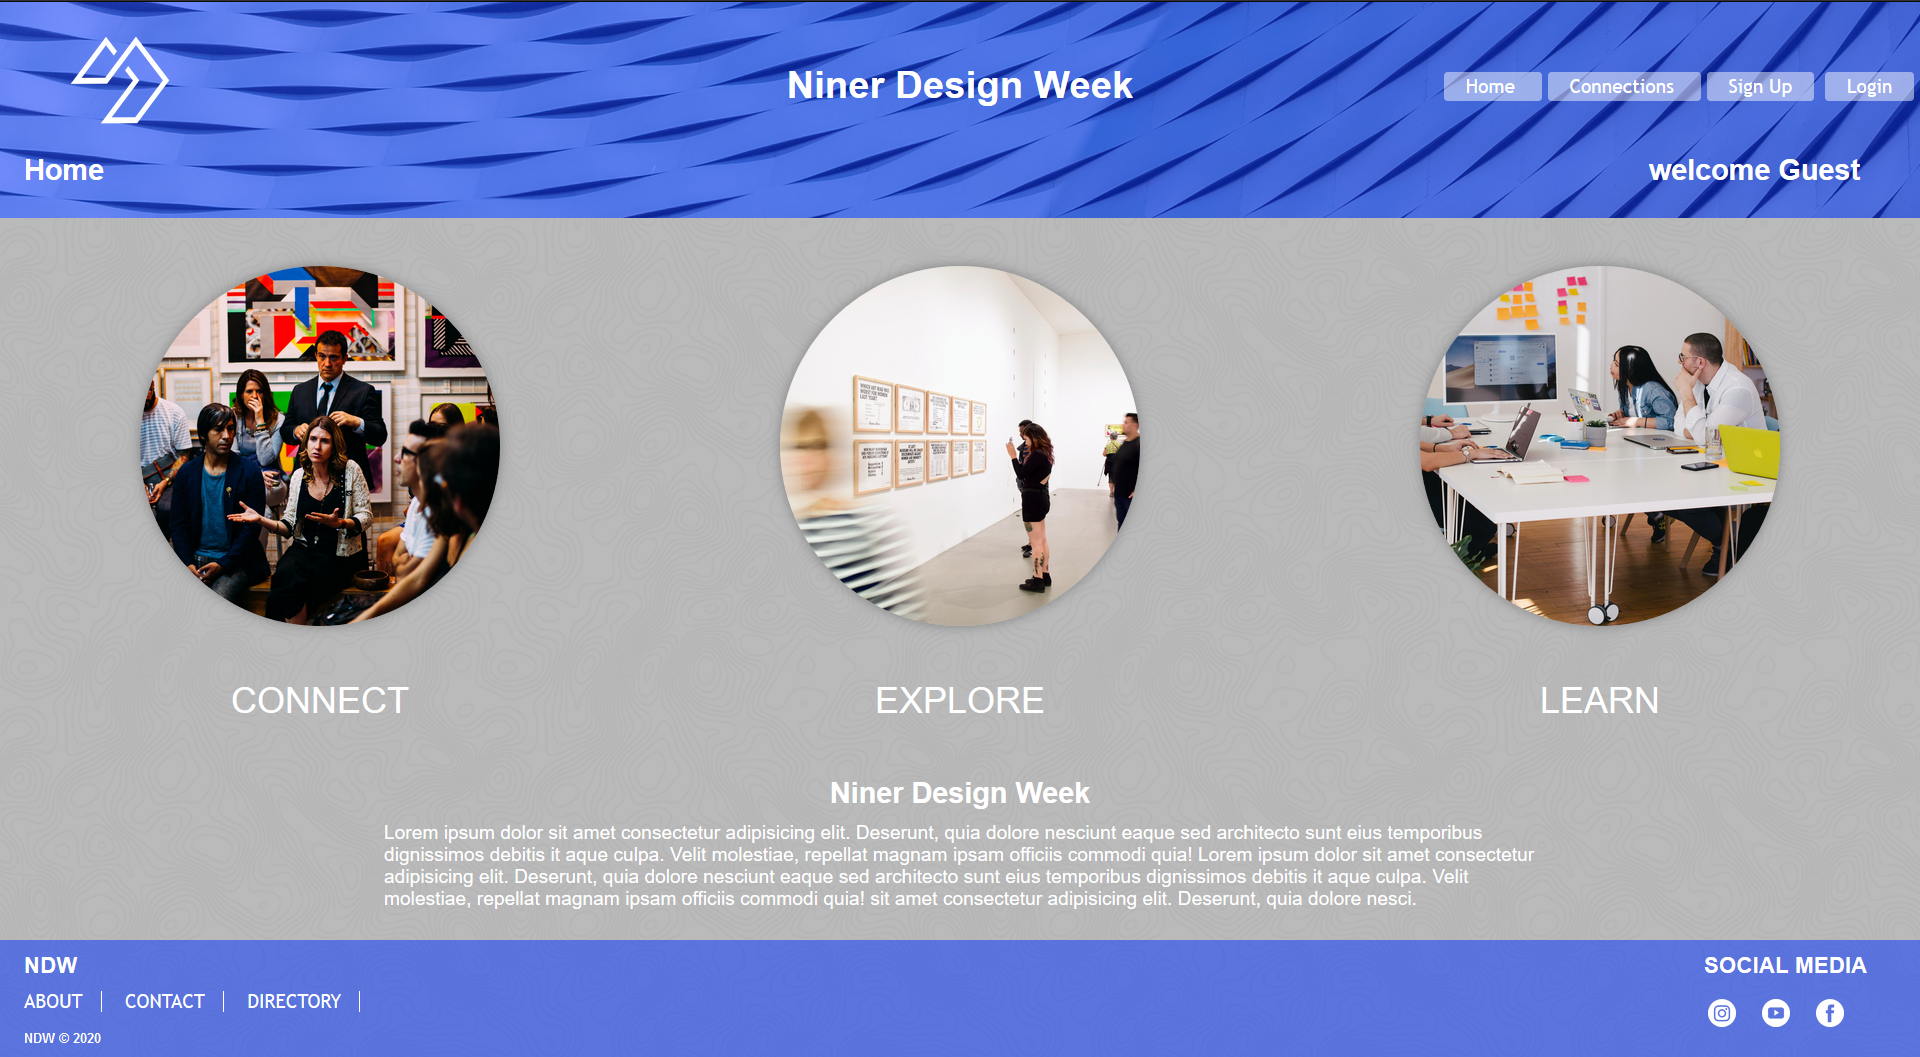 Niner Design Week